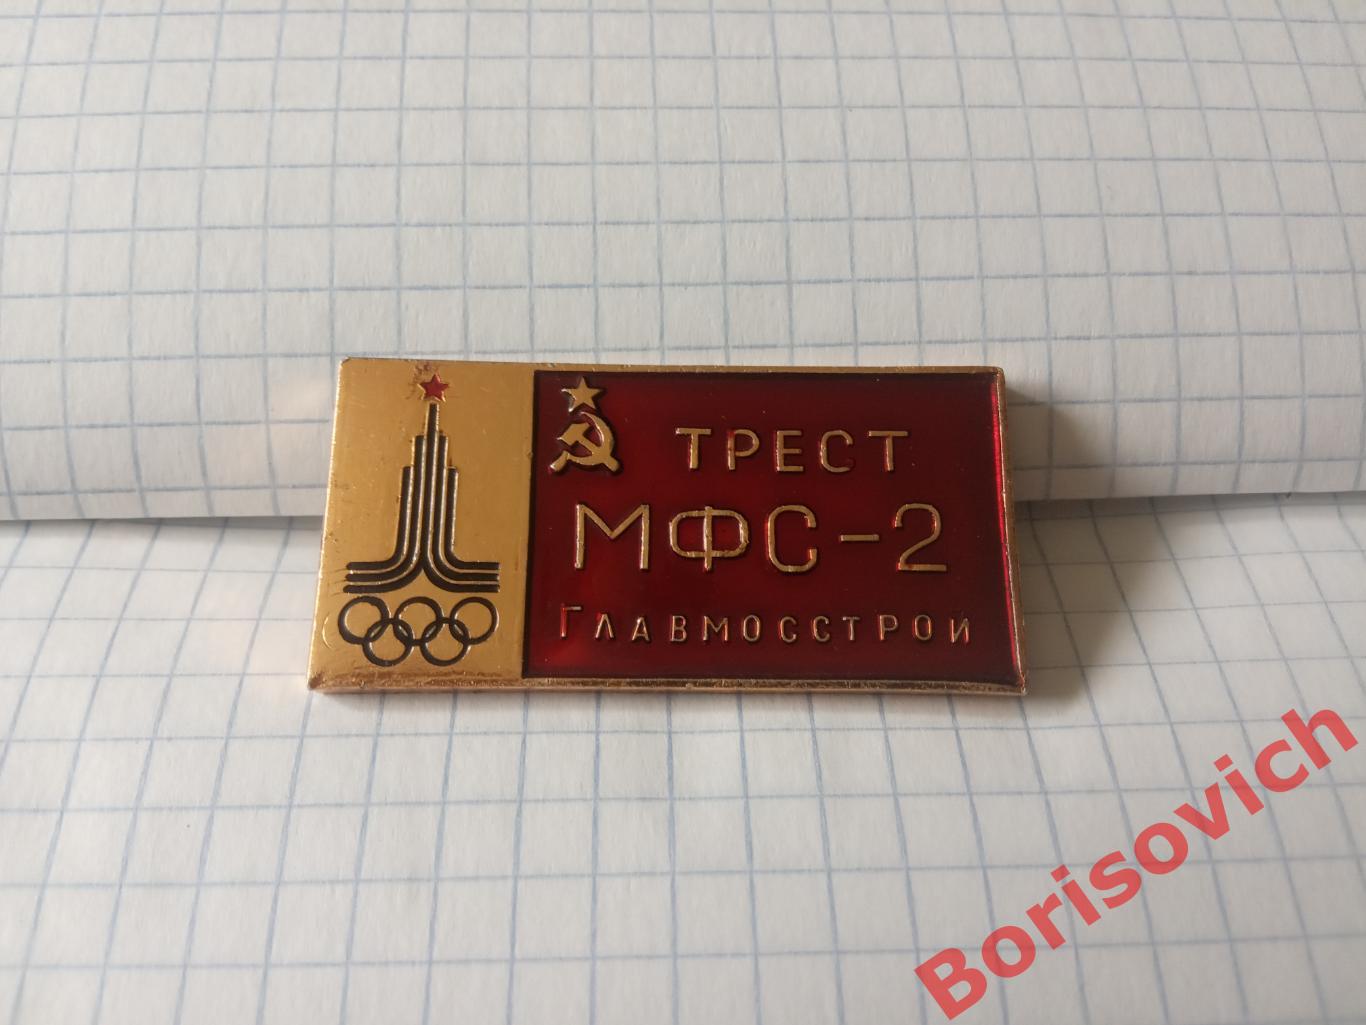 Трест МФС - 2 Главмосстрой Олимпиада 1980 г